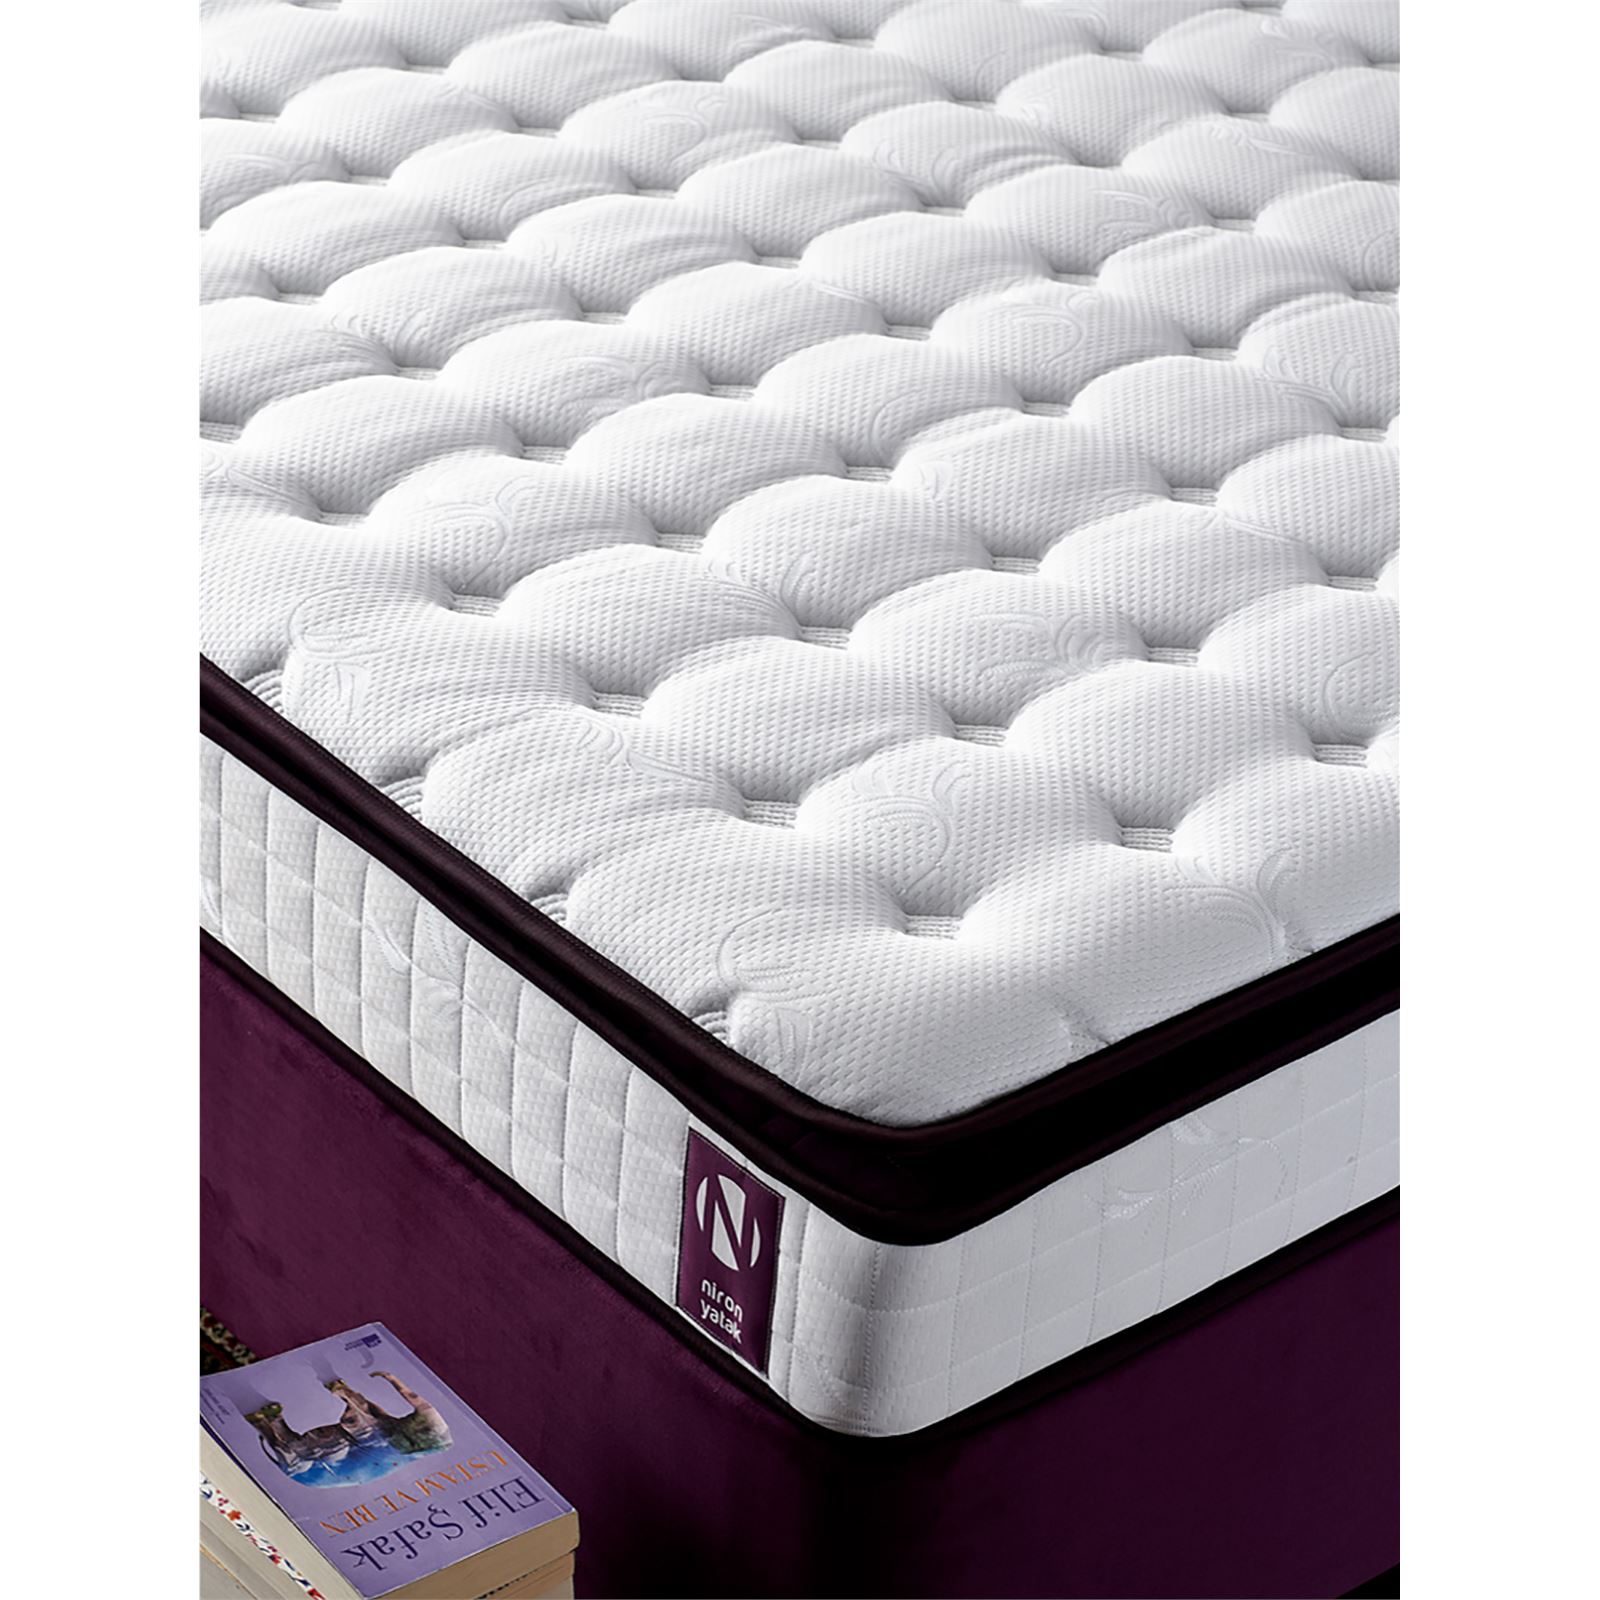 Niron Purple Yatak Seti 140x190 cm Çift Kişilik Yatak Baza Başlık Takımı Orta Sert Yatak Baza ve Başlığı Mor